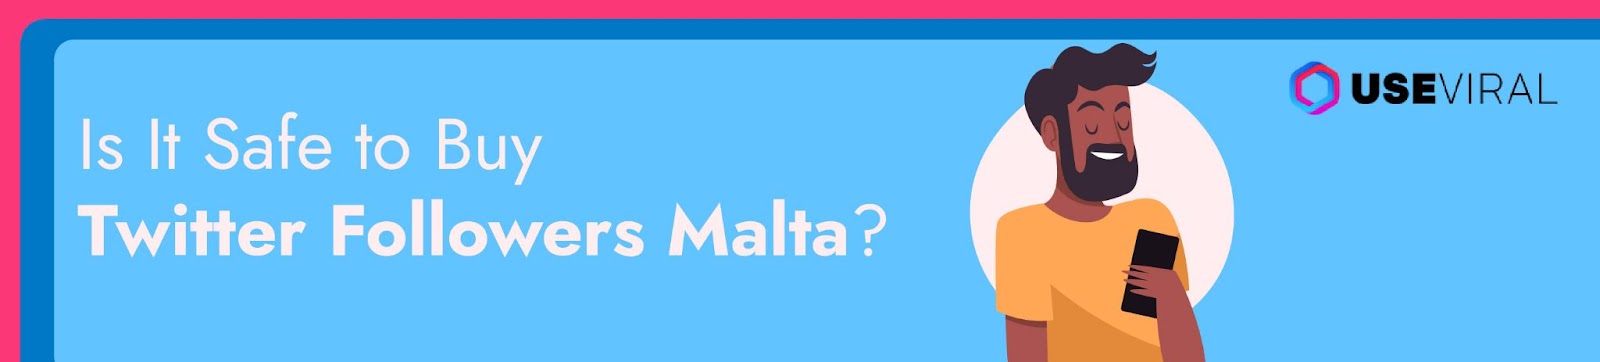 Is It Safe to Buy Twitter Followers Malta?